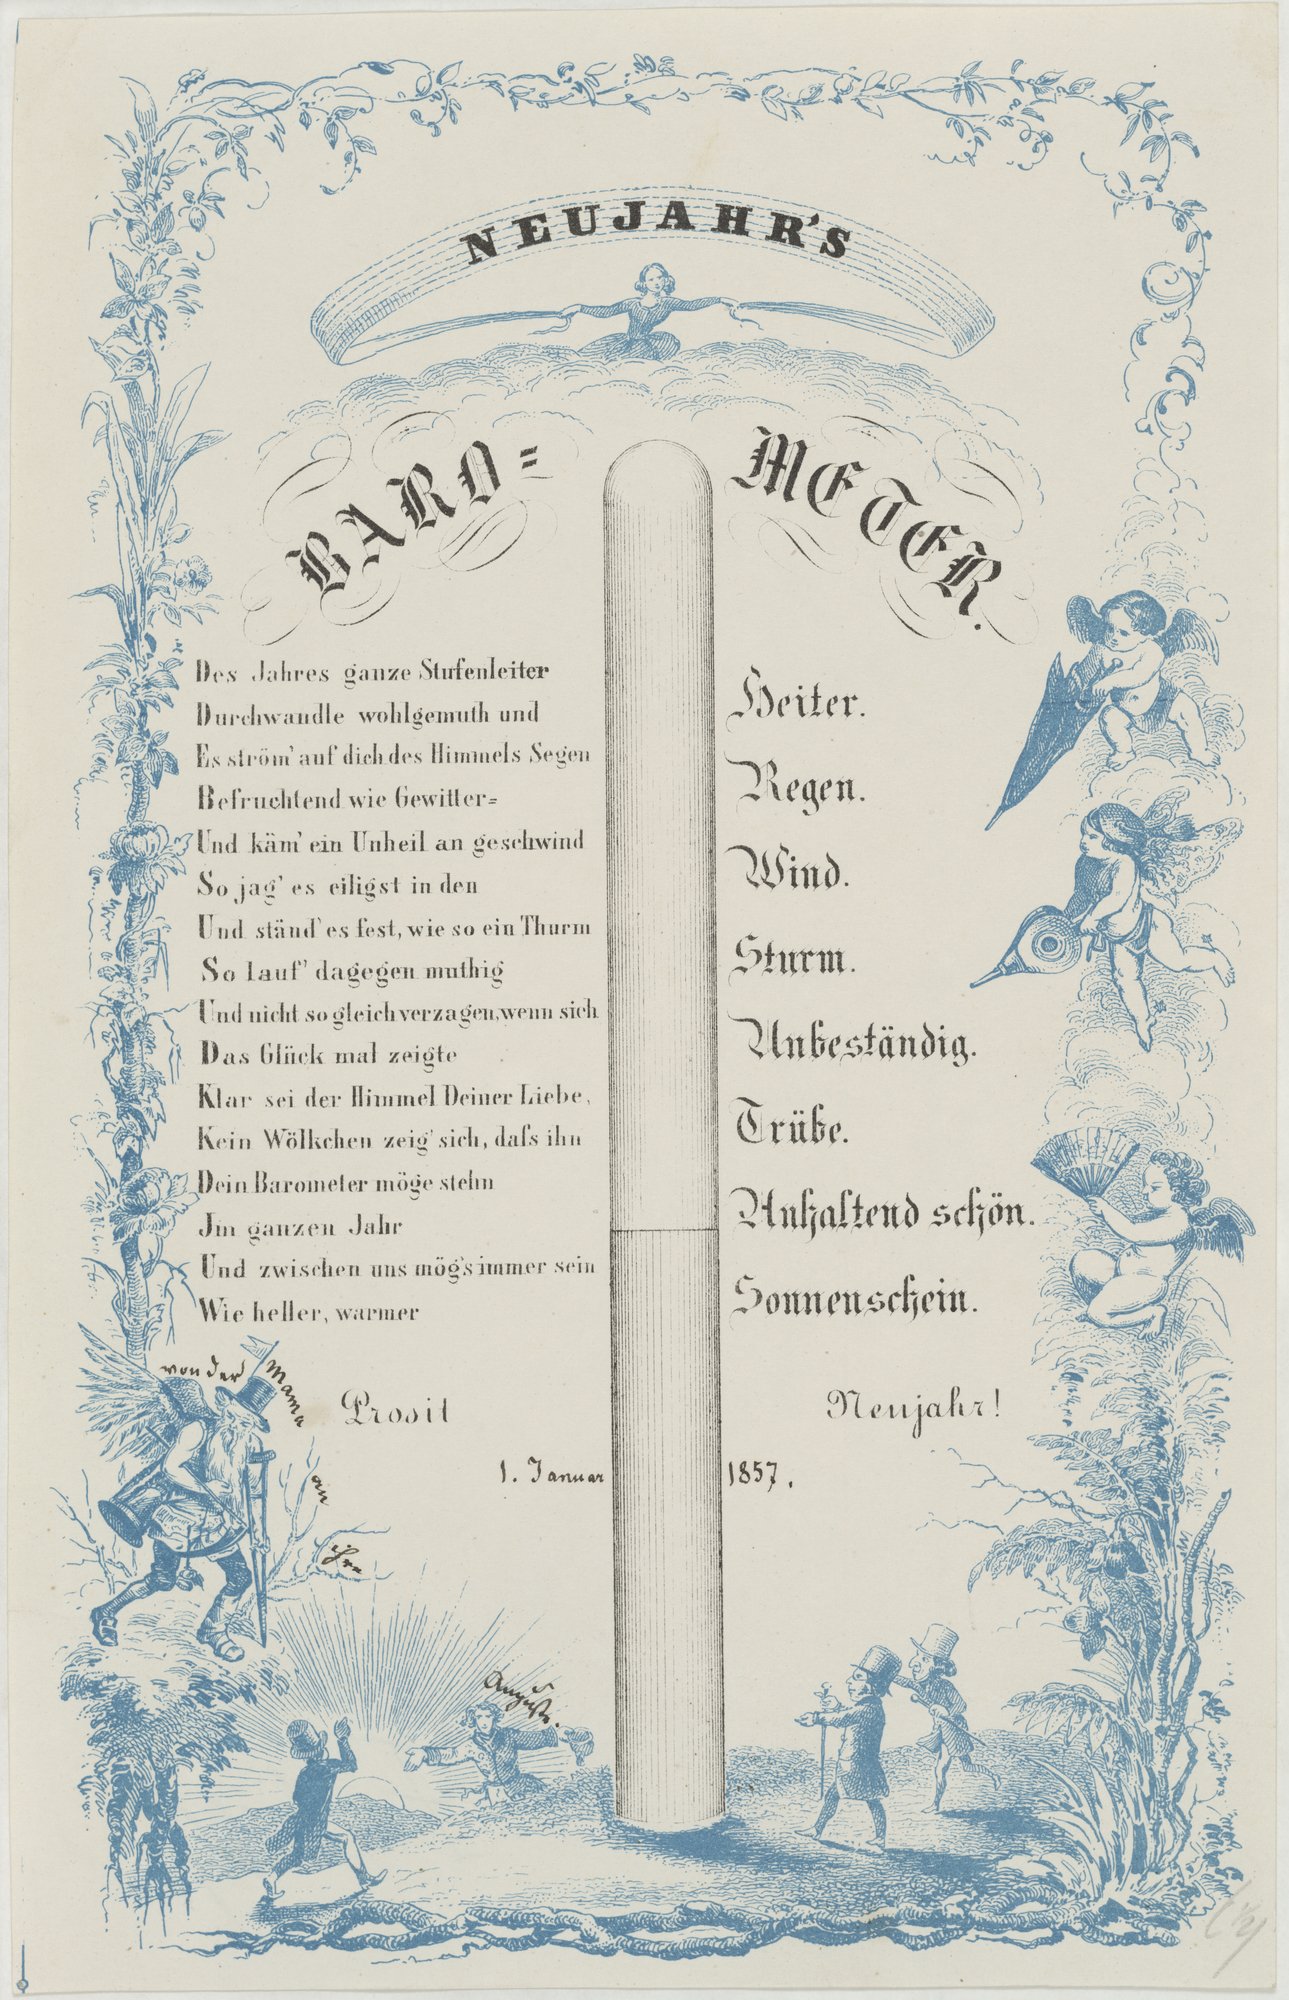 NEUJAHR'S/ BARO= METER. (Kulturstiftung Sachsen-Anhalt Public Domain Mark)